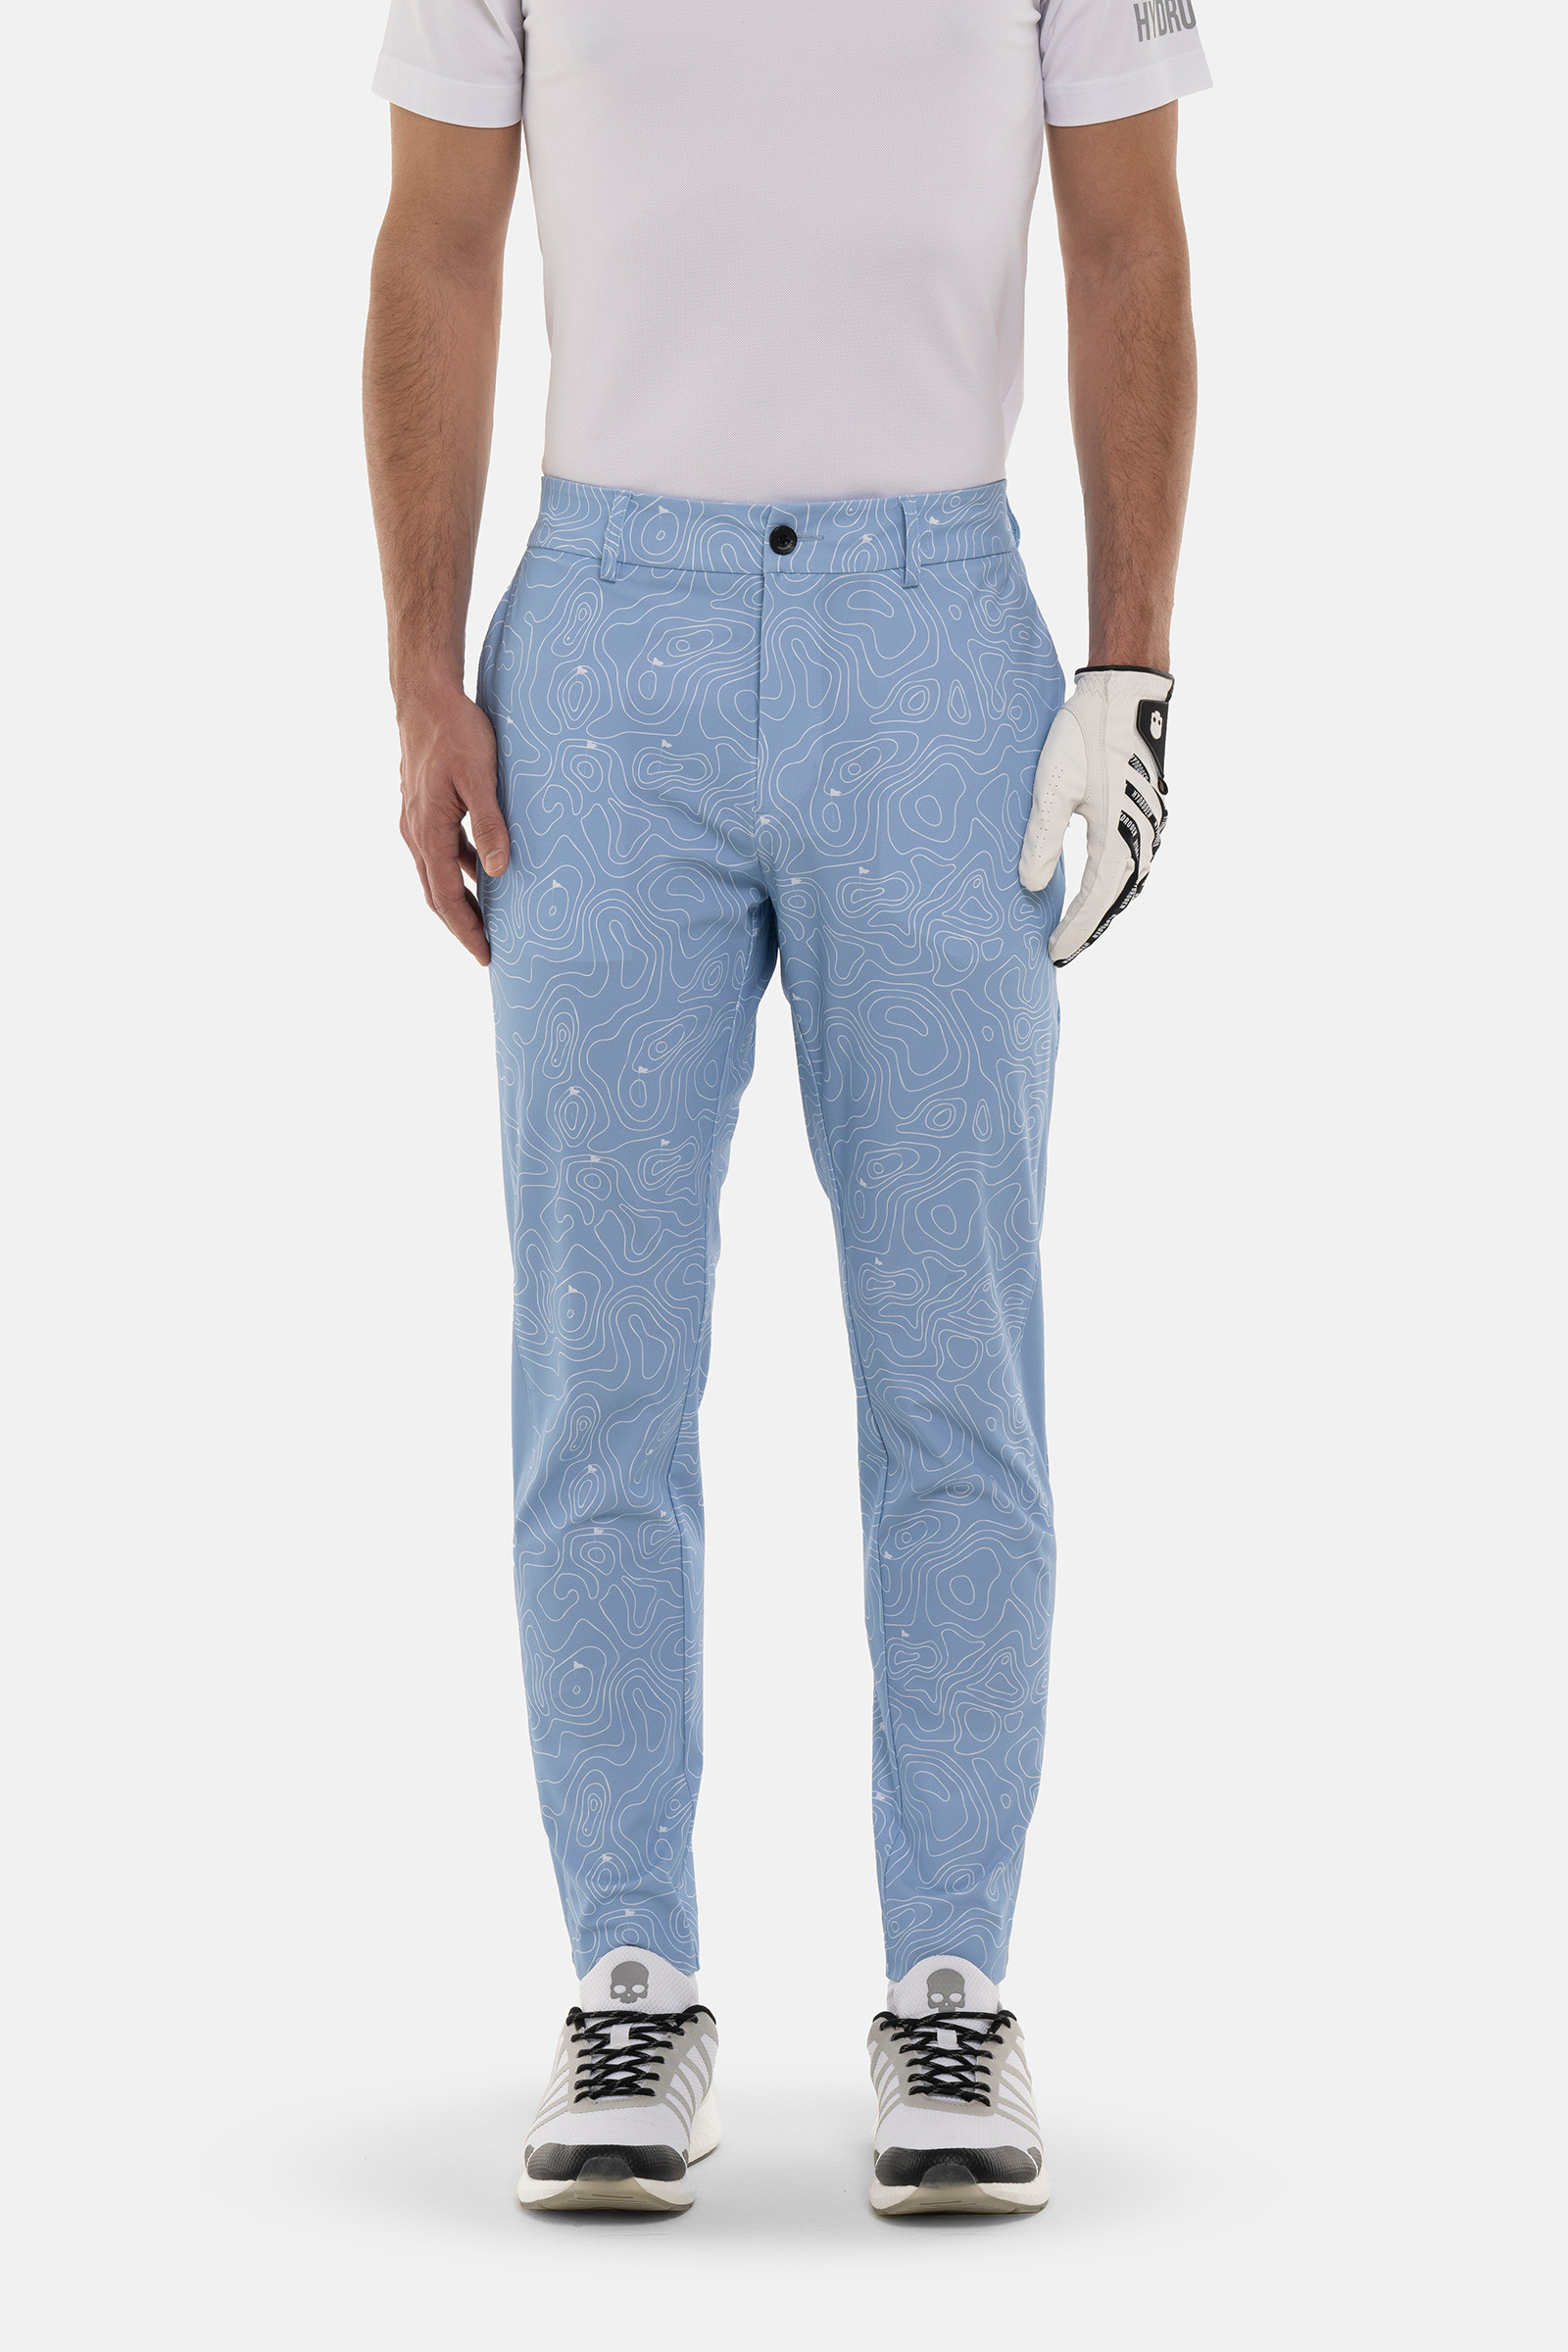 GOLF FIELDS TECH PANTS - Apparel - Hydrogen - Luxury Sportwear